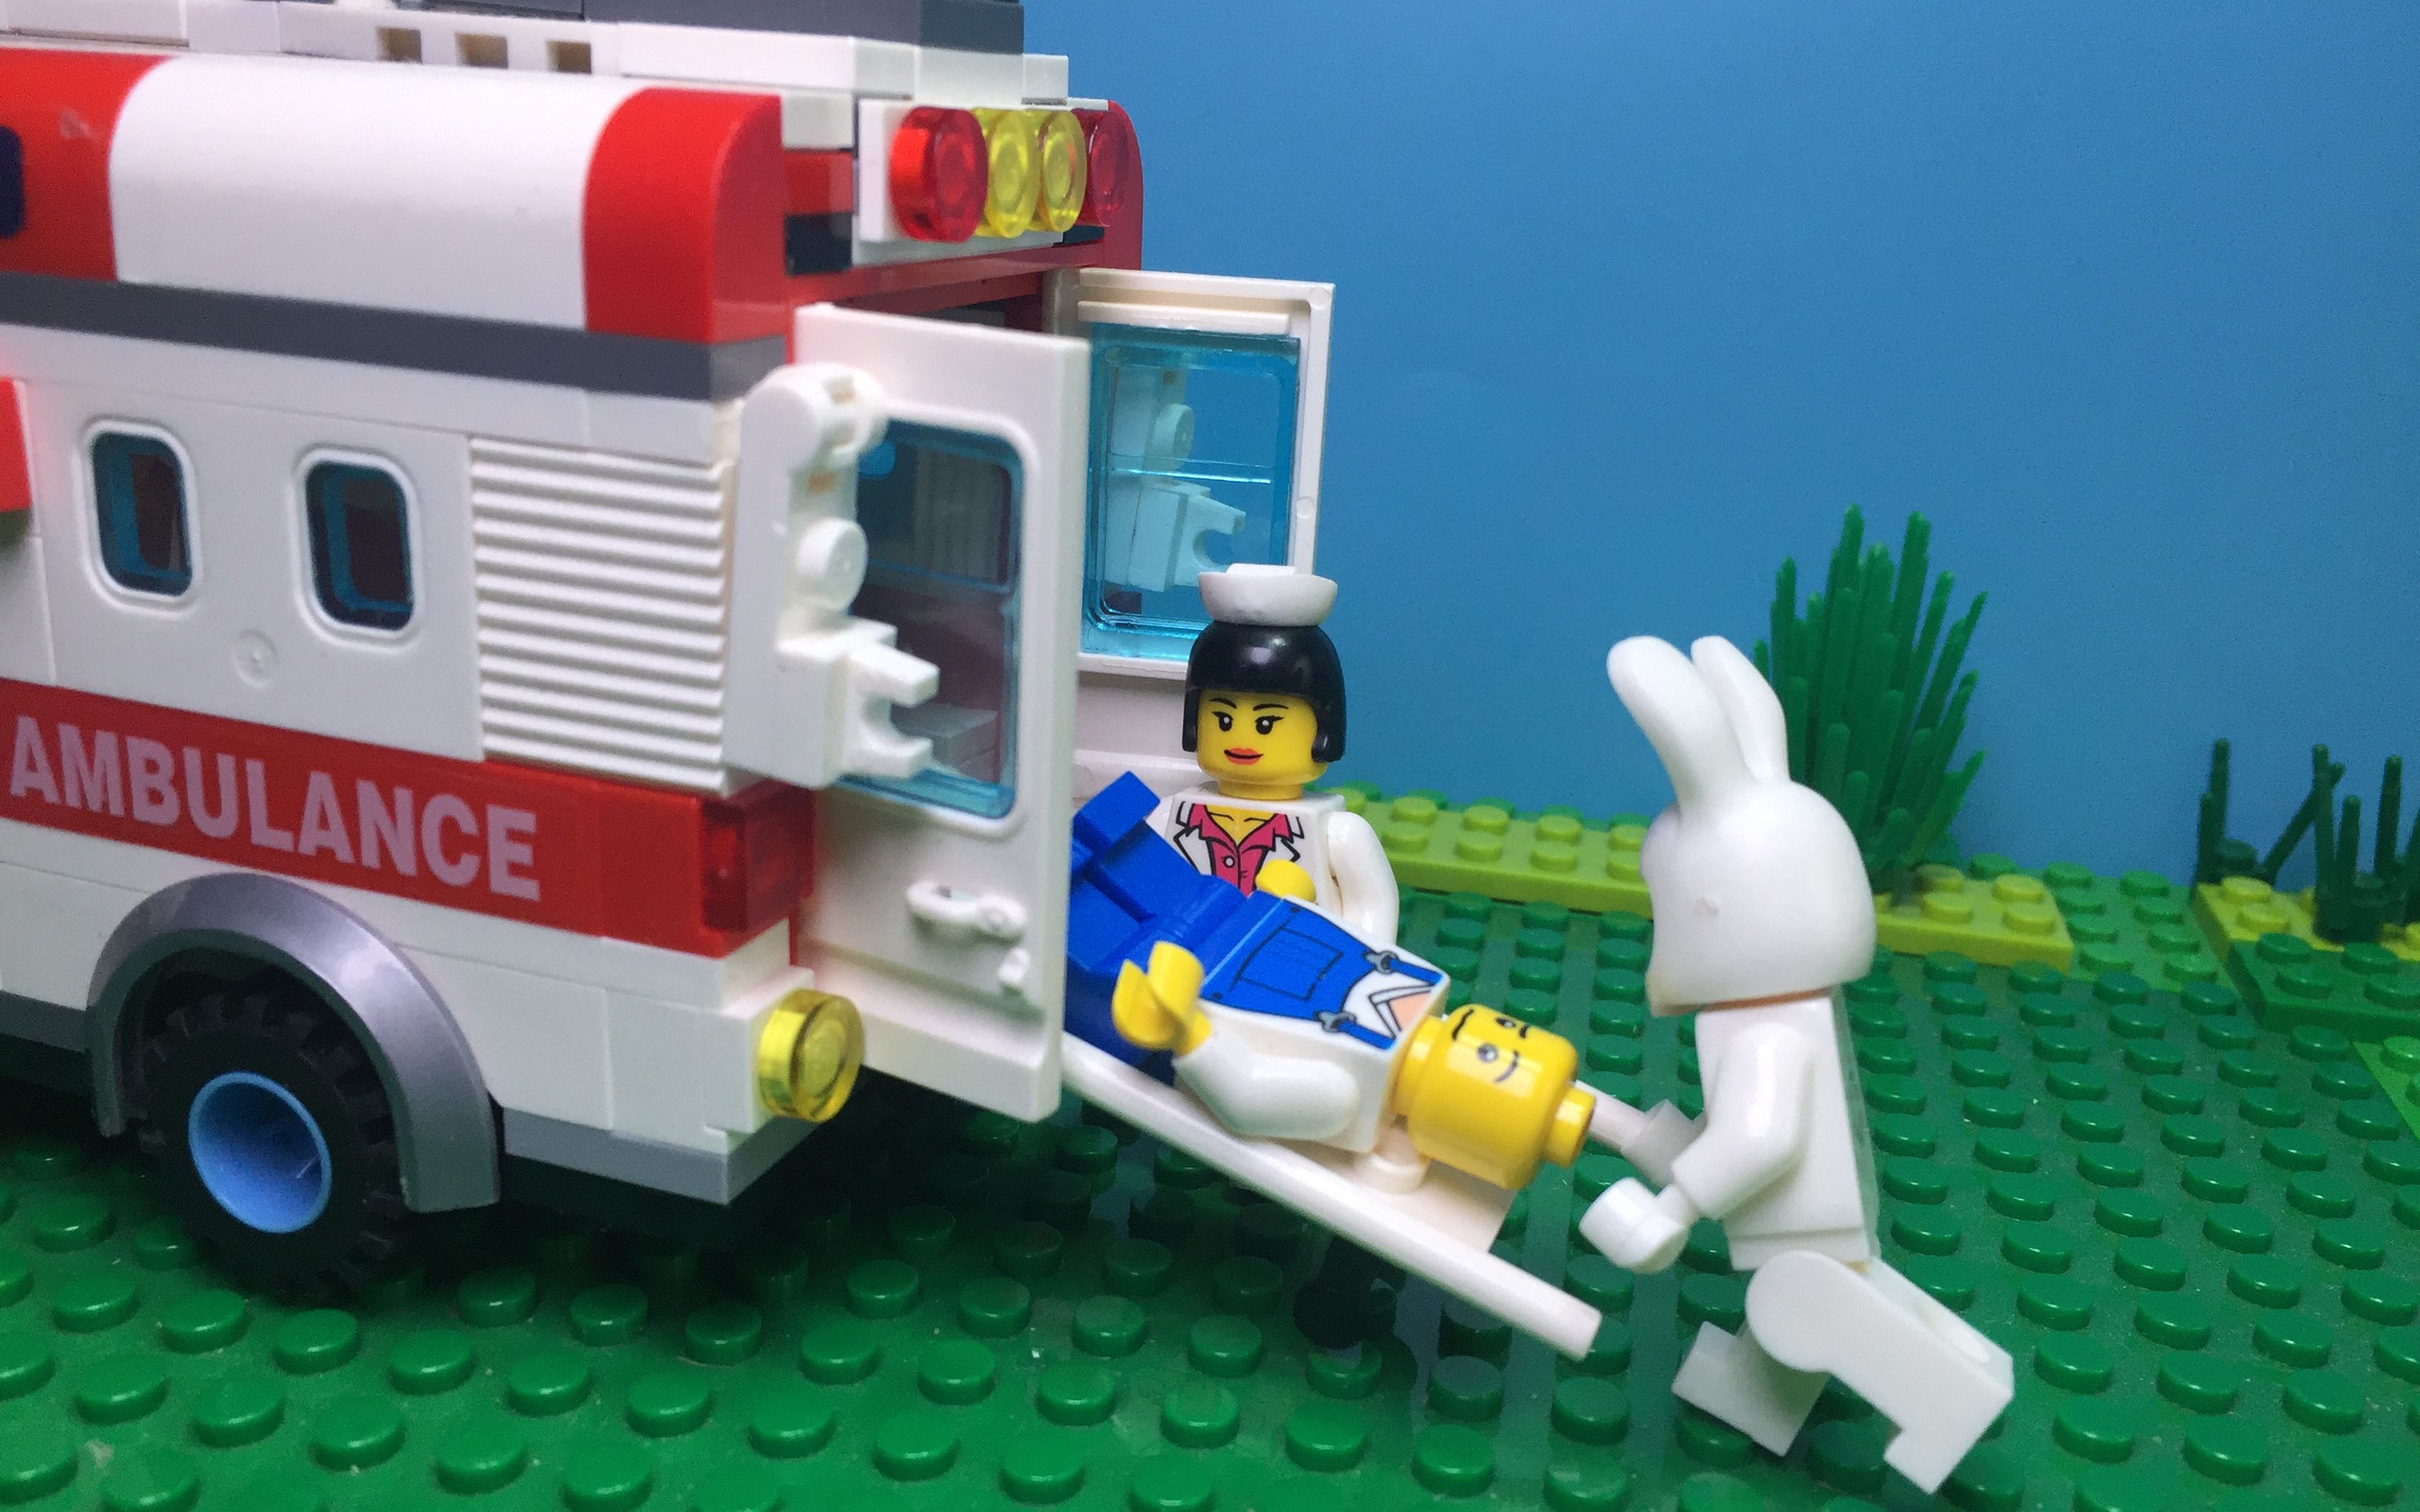 Lego 乐高玩具 救护车 牛顿定律 小顽皮抓兔子不成反被苹果砸 儿童学英语 数字12345